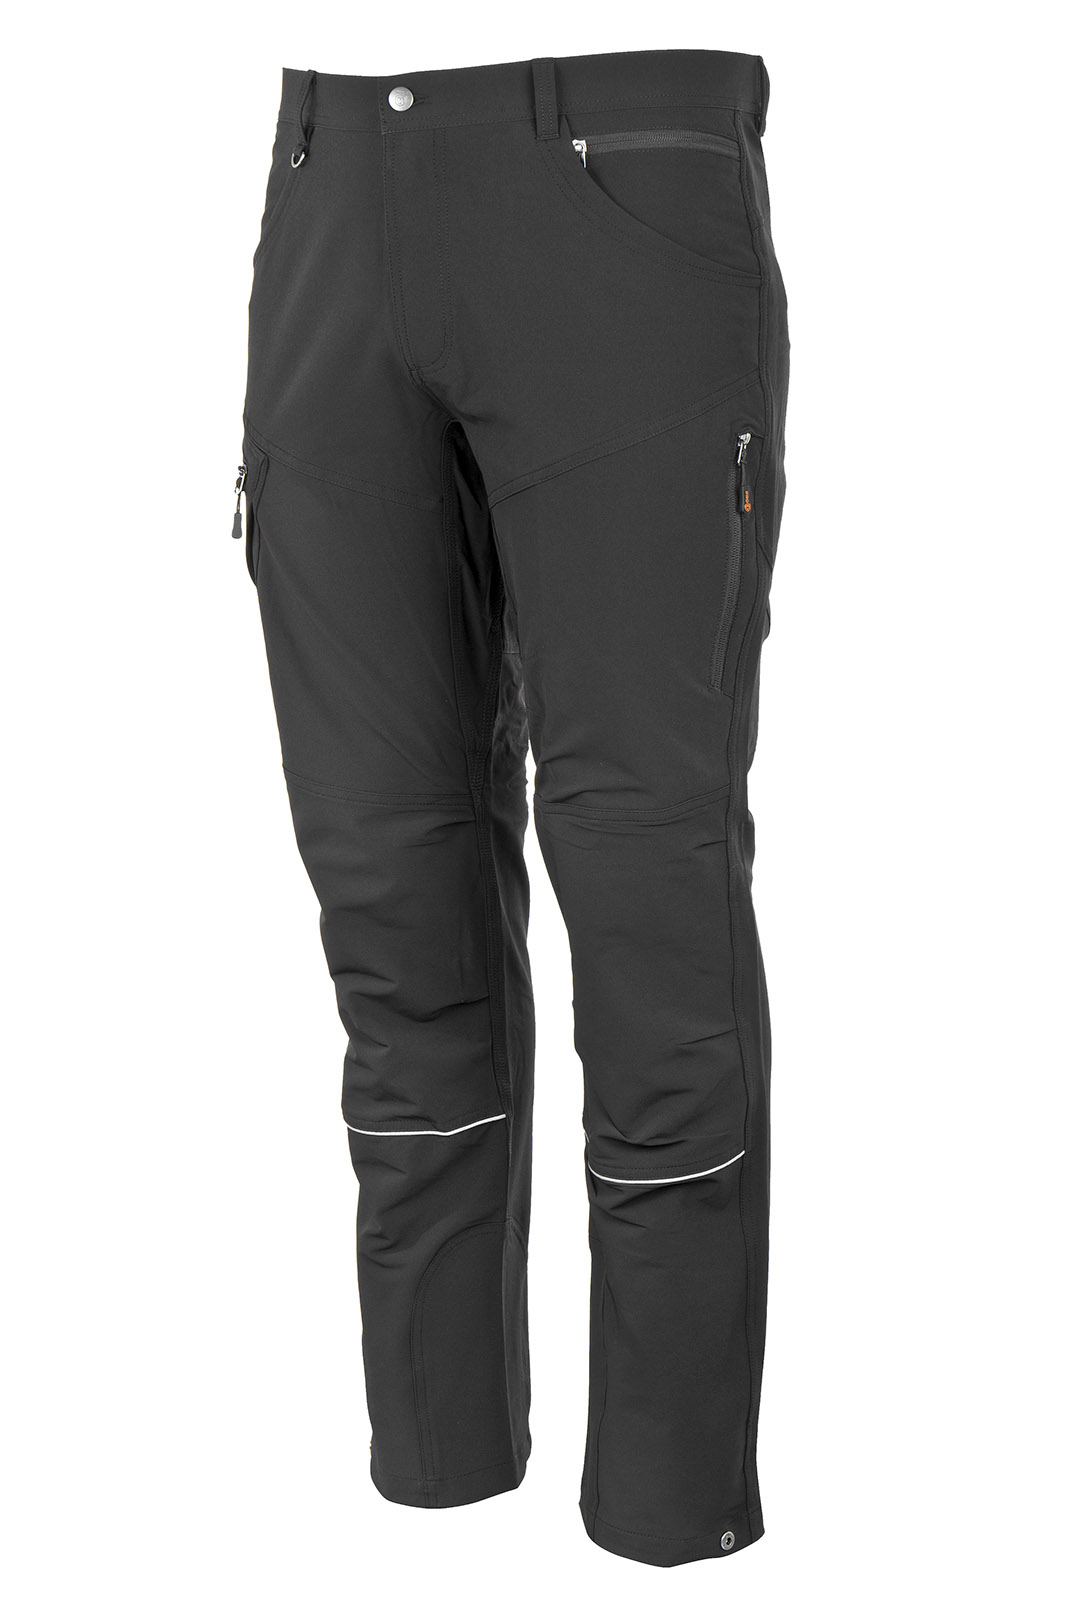 Promacher Outdoorové strečové kalhoty FOBOS TROUSERS BLACK vel.50